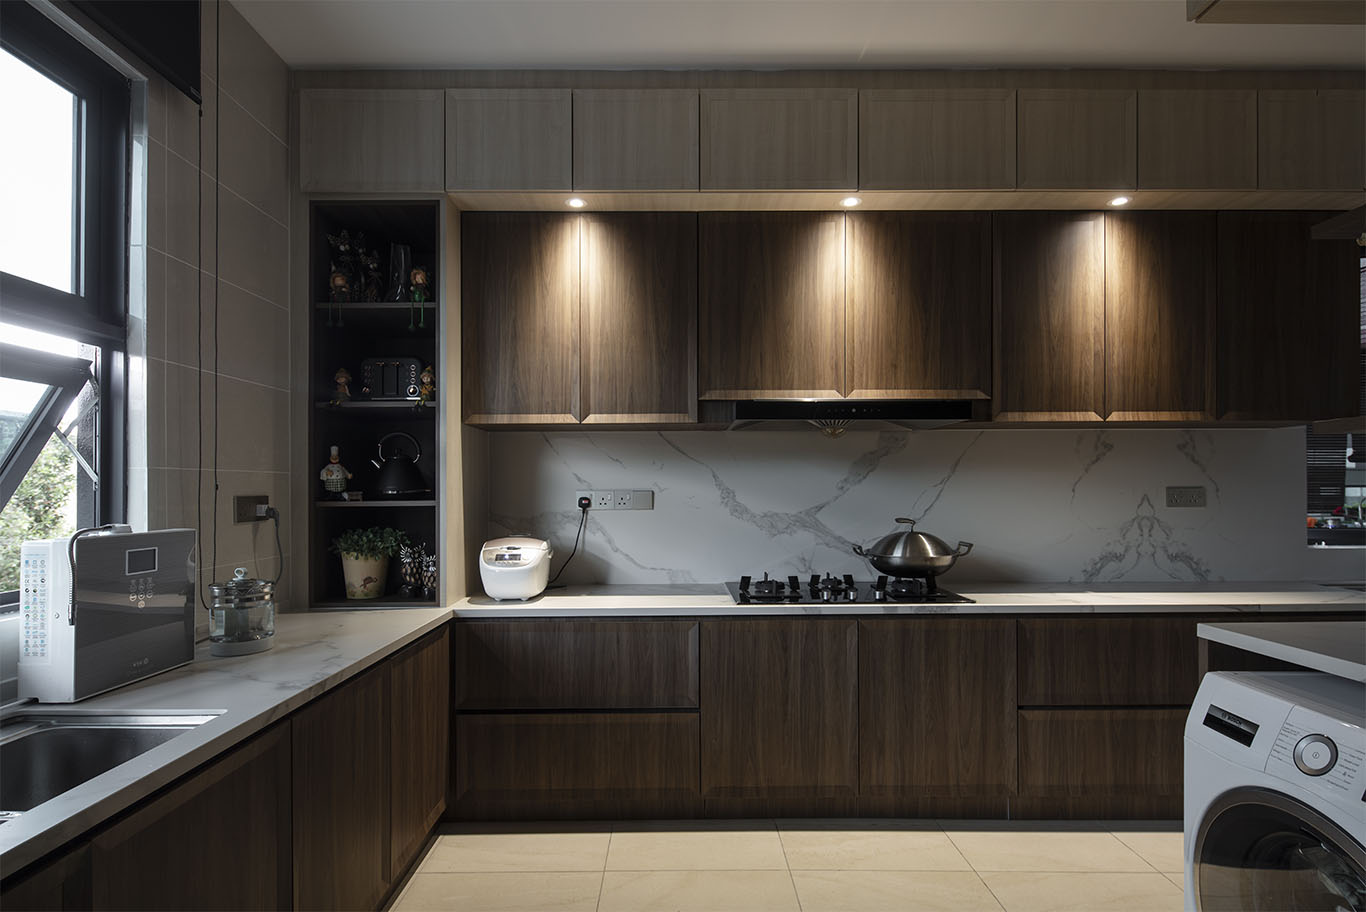 MIEUX La Famillie De Lee modern kitchen design with brown wooden theme mieux interior design